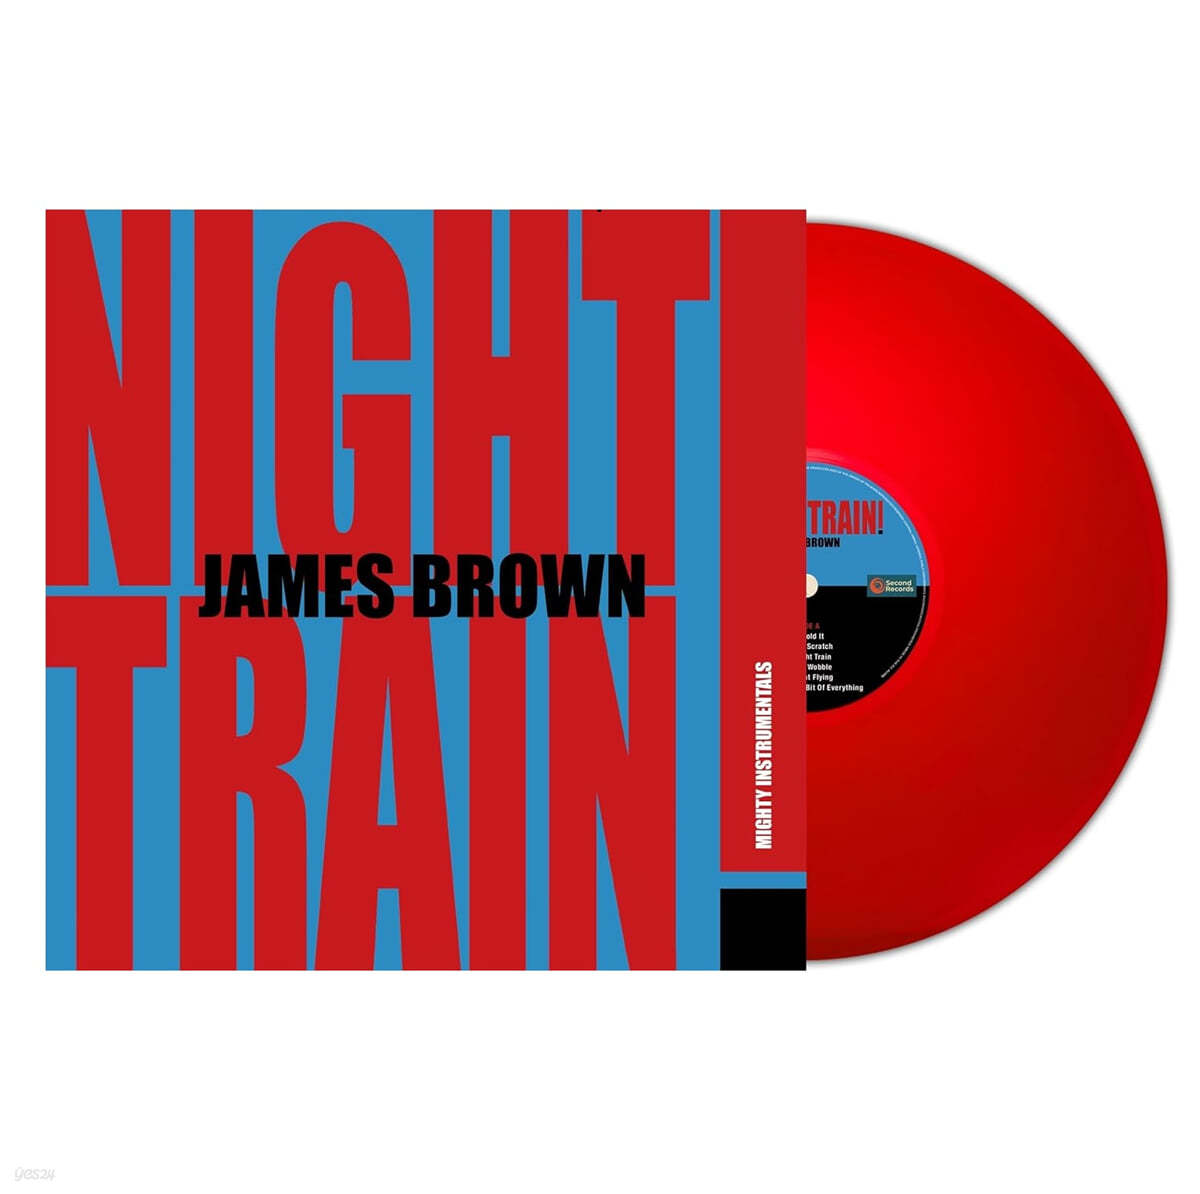 James Brown (제임스 브라운) - Night Train! [레드 컬러 LP] 